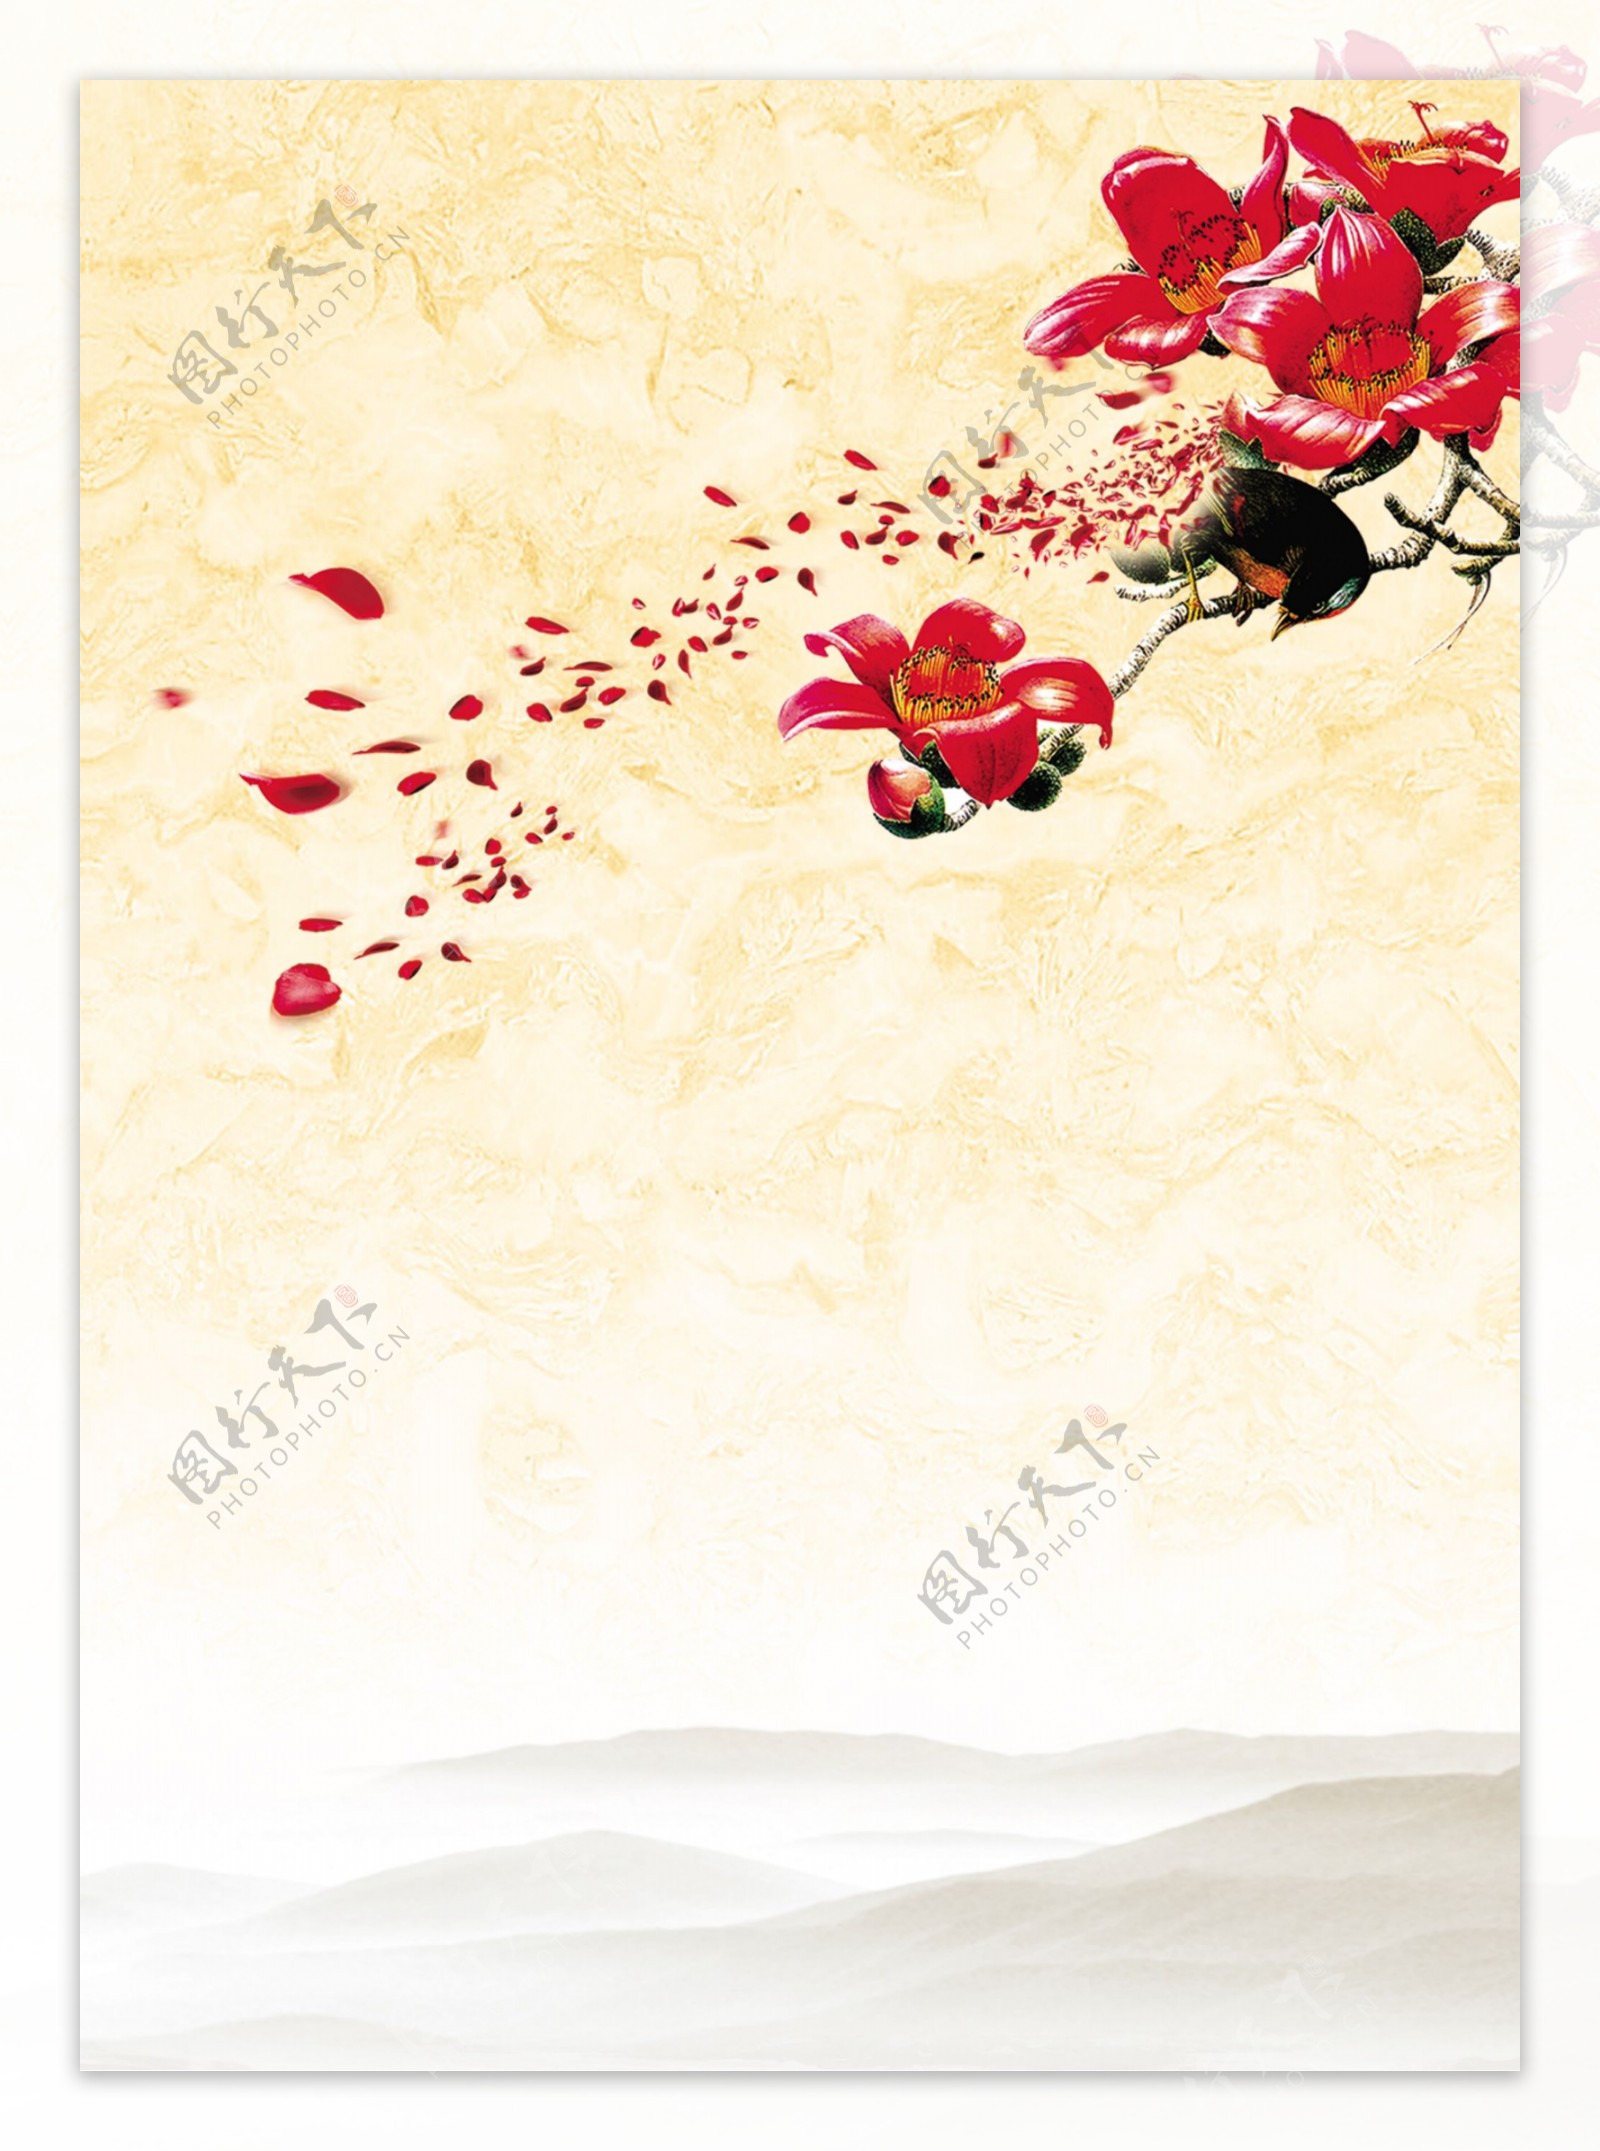 红花背景图片设计